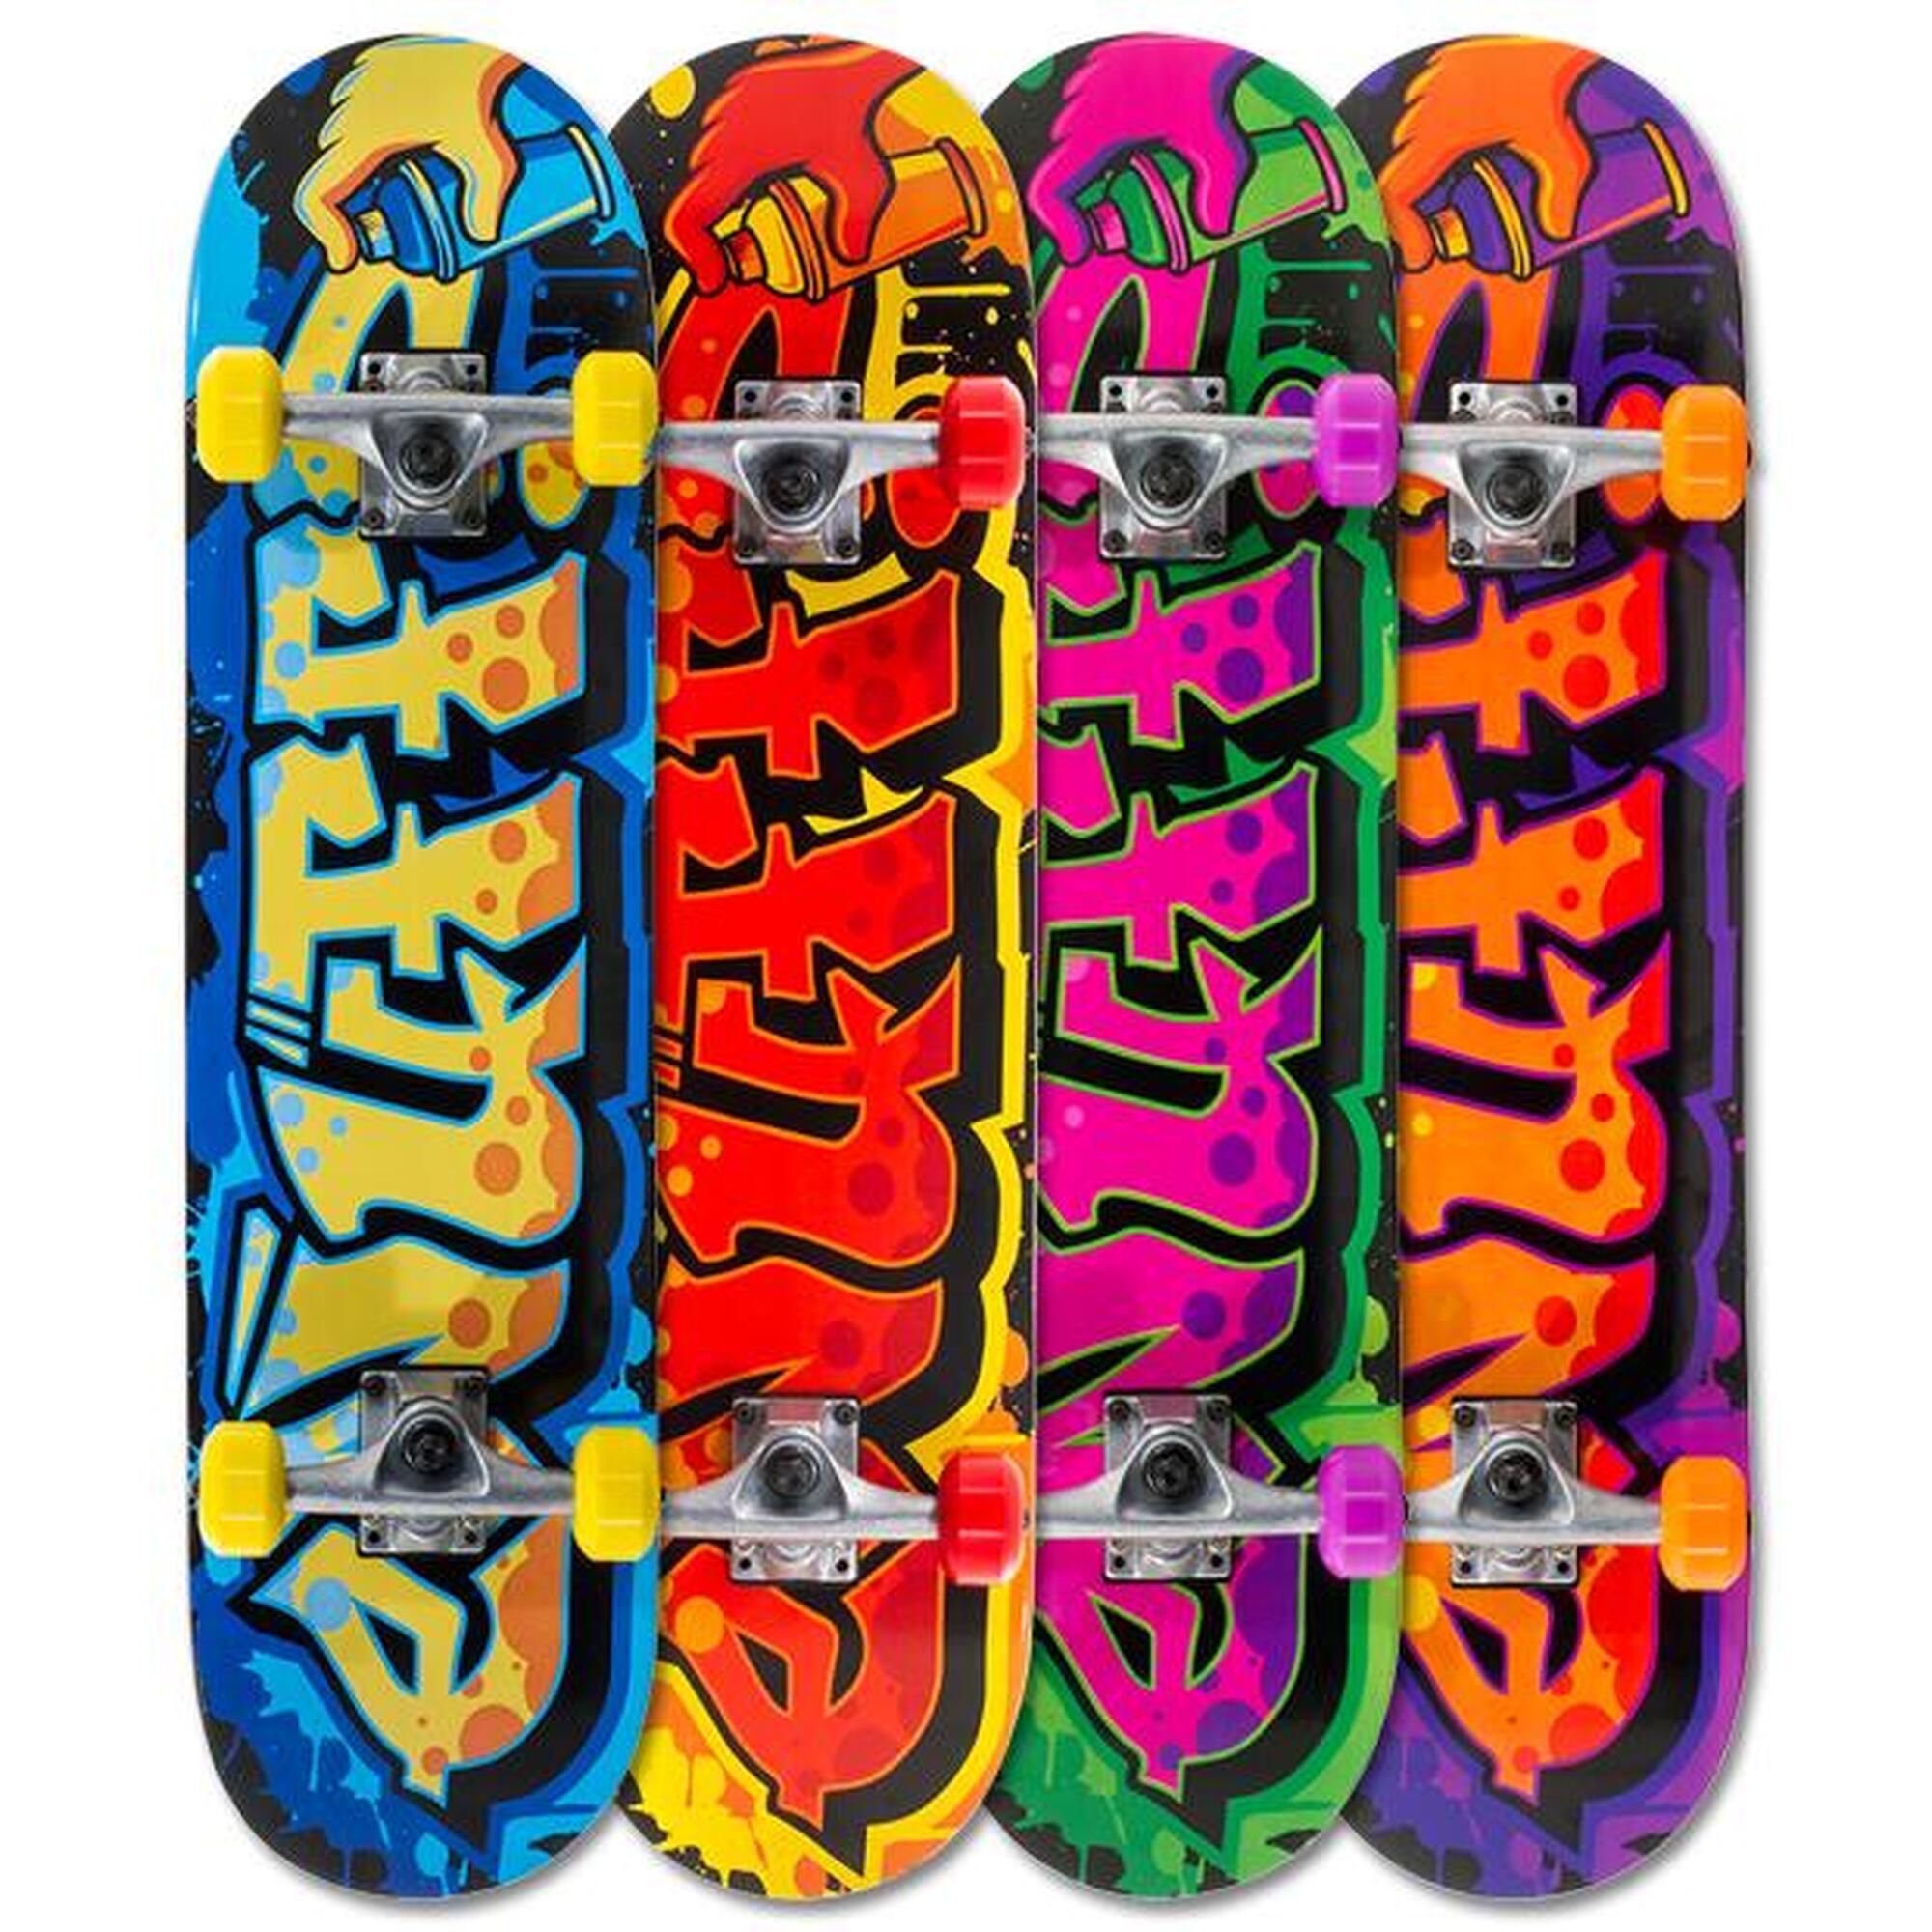 Enuff Graffiti II 7.25"x29.5" Blu/Giallo Skateboard